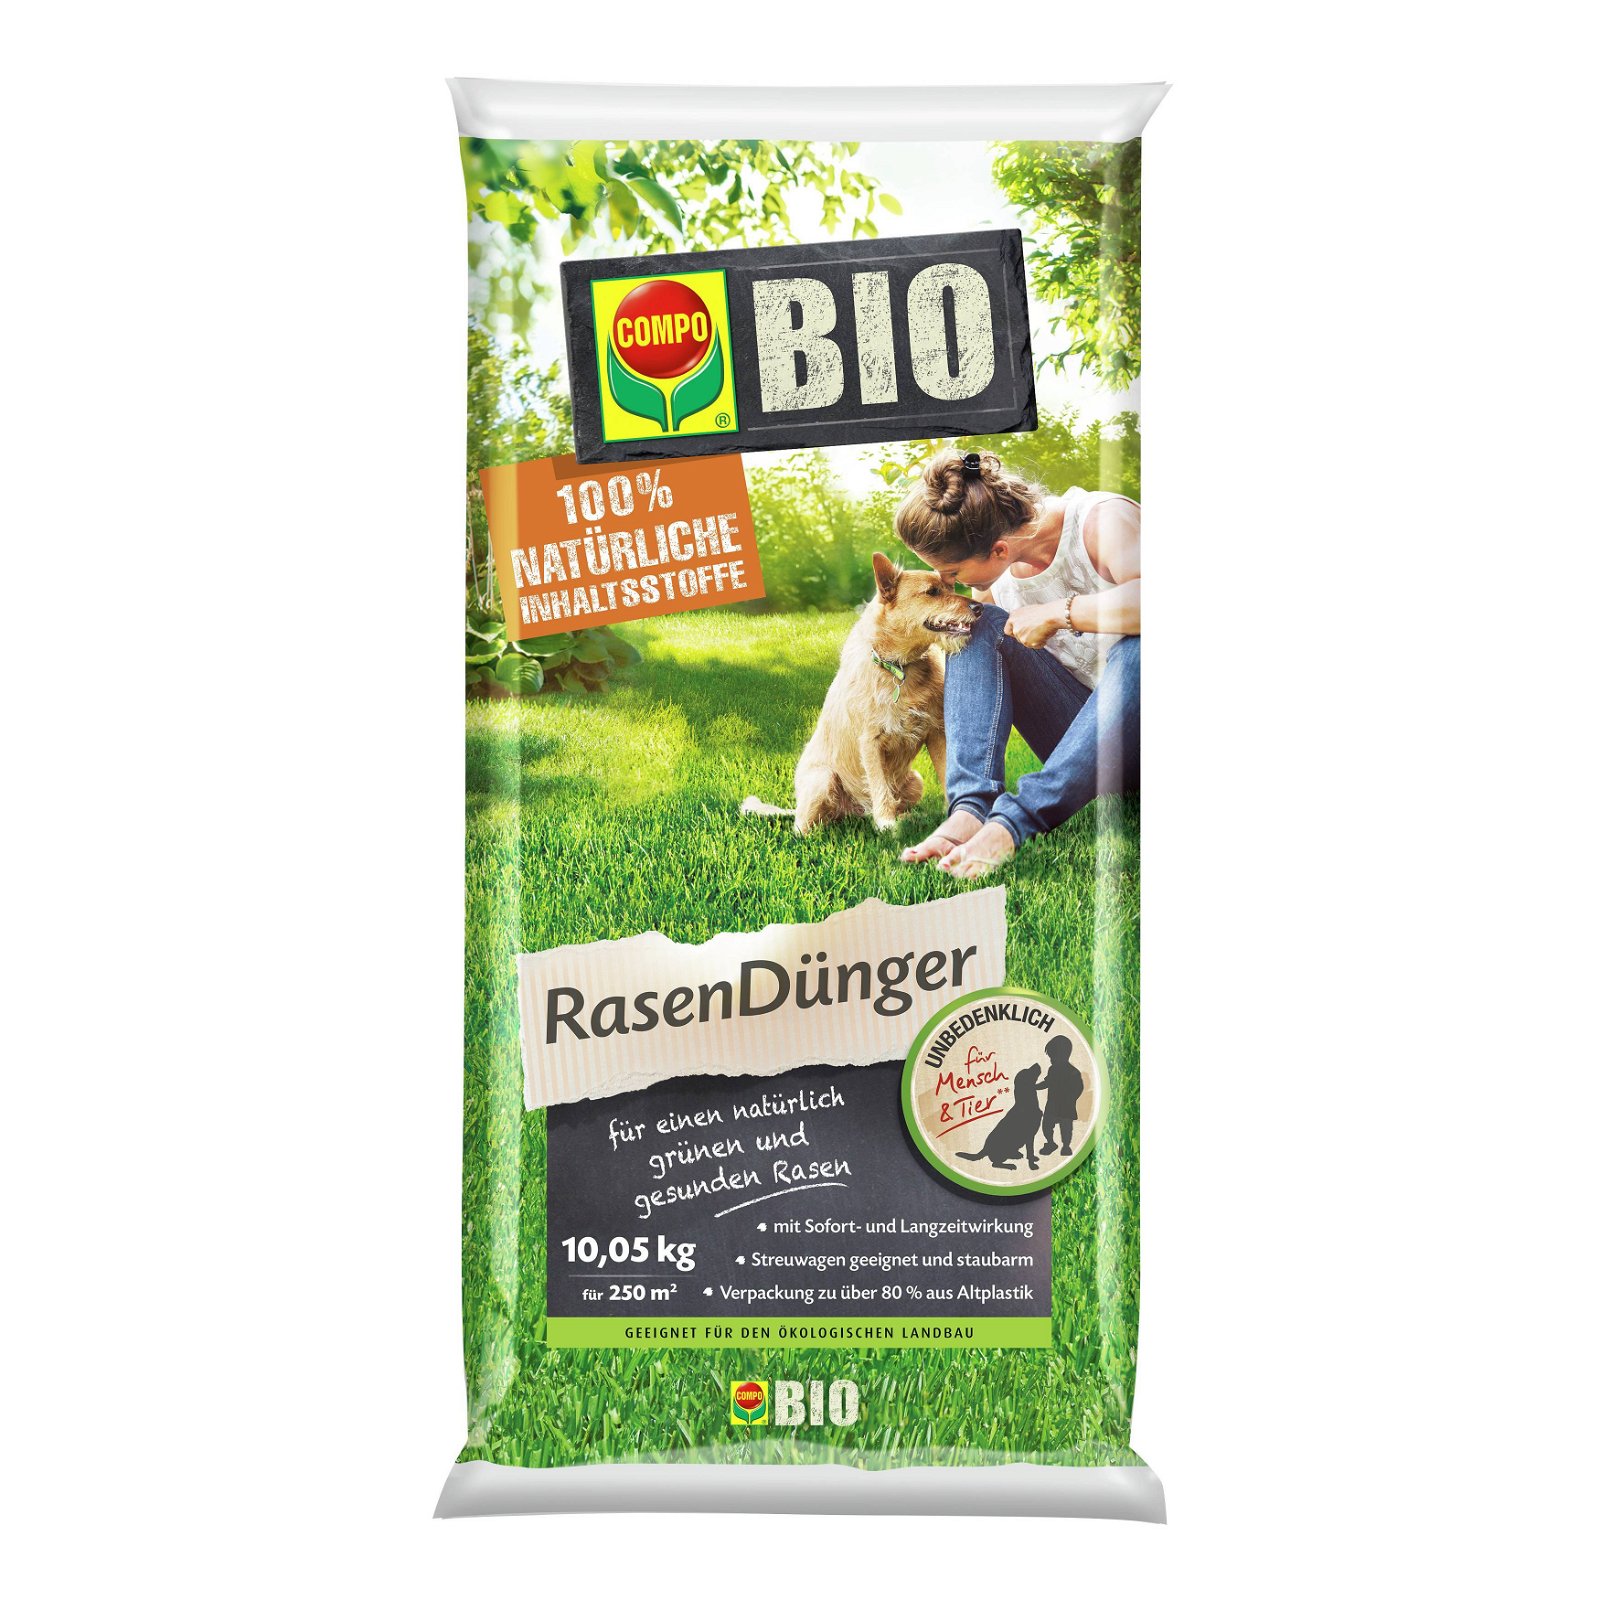 Bio Rasendünger für 250 qm, 10,05 kg